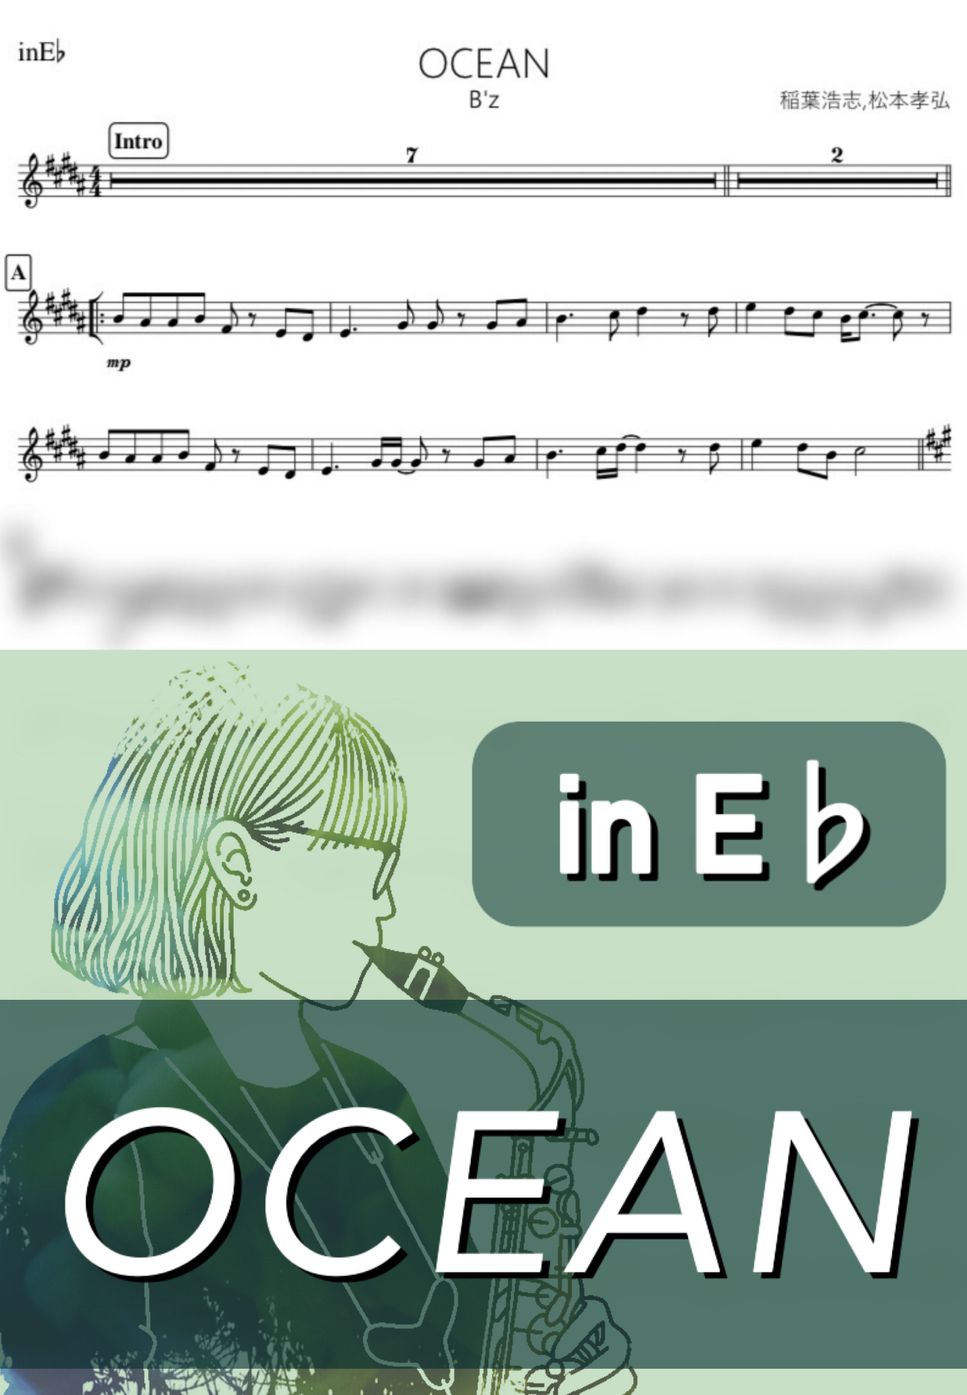 B'z - OCEAN (E♭) by kanamusic